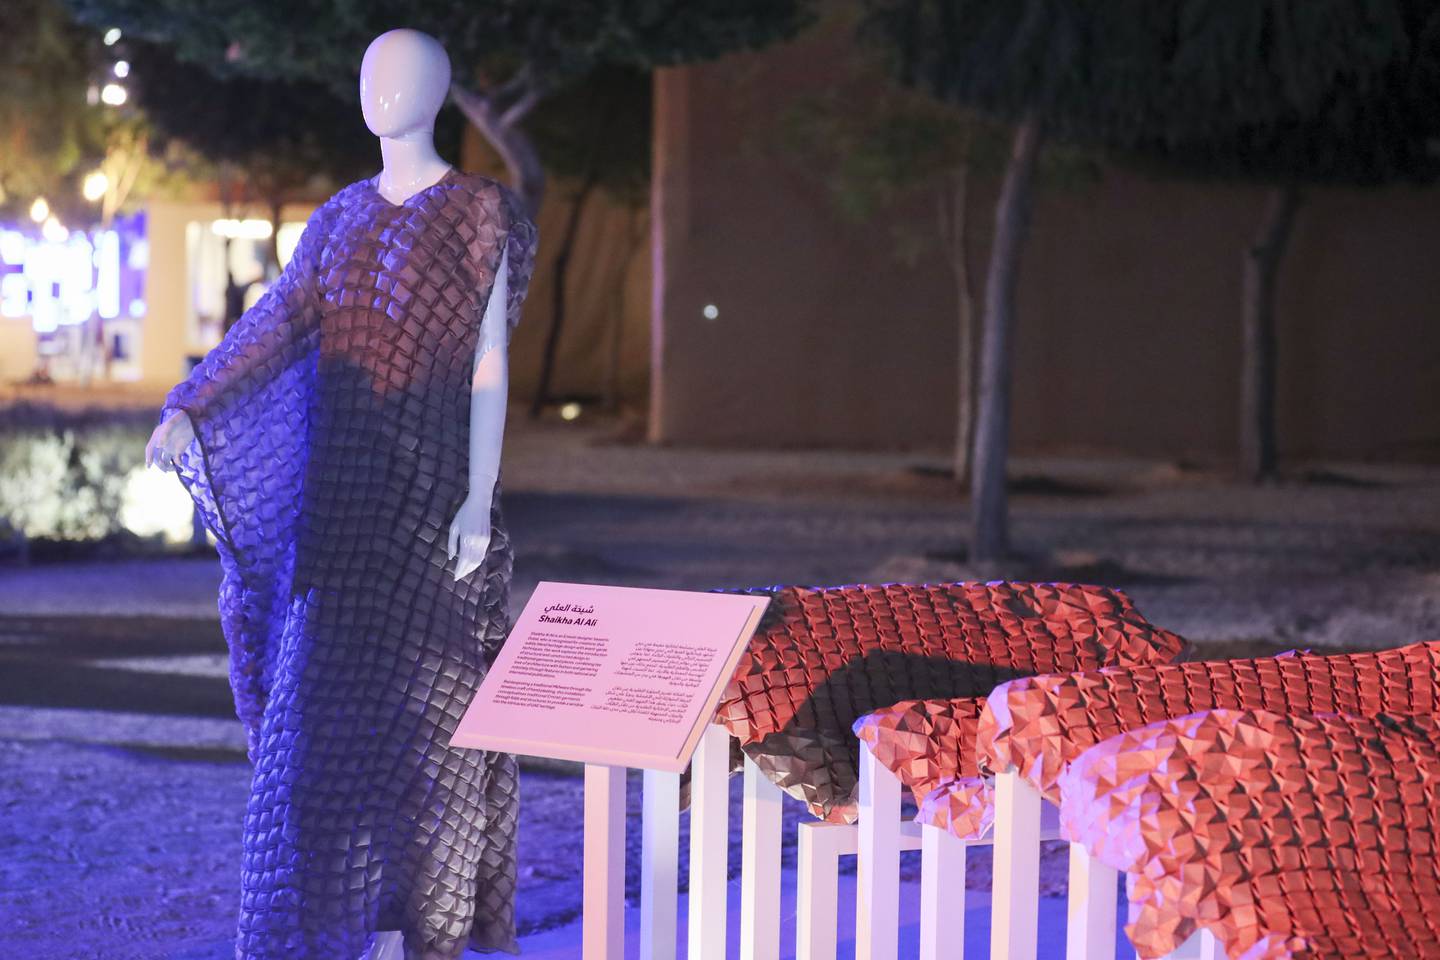 Shaikha Al Ali, an Emirati designer based in Dubai, and her creation at Al Hosn Festival. Khushnum Bhandari / The National